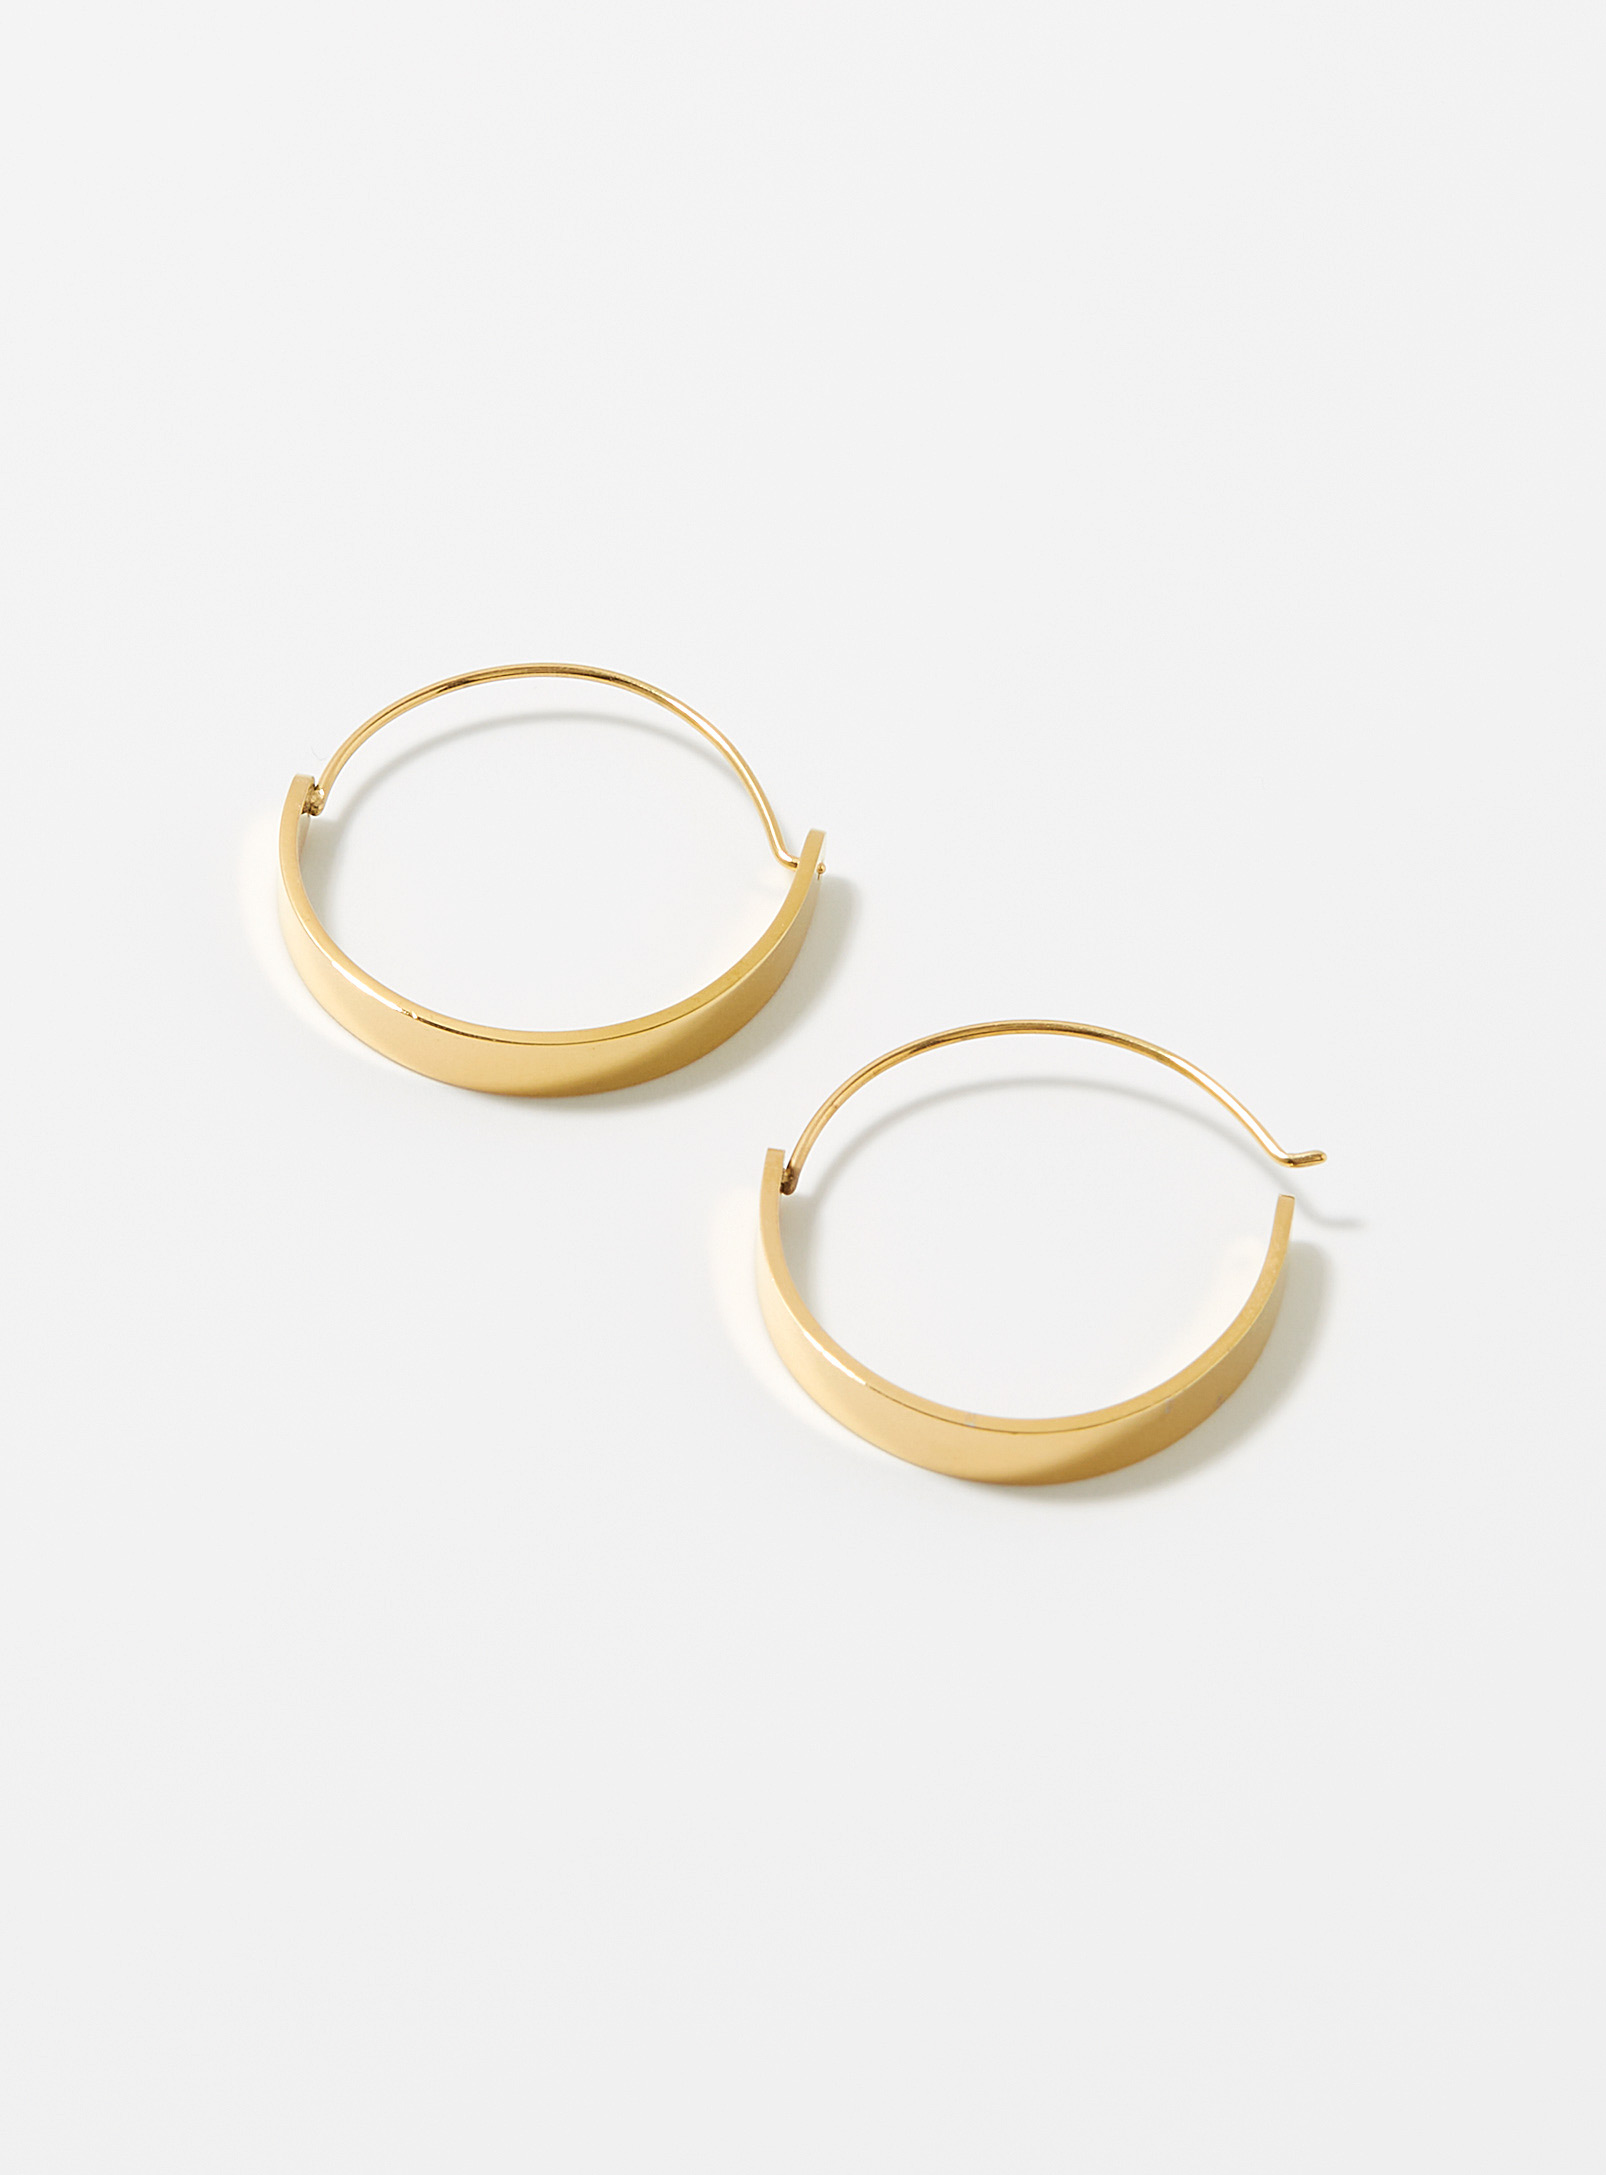 Simons - Women's Shiny refined Hoop Earrings